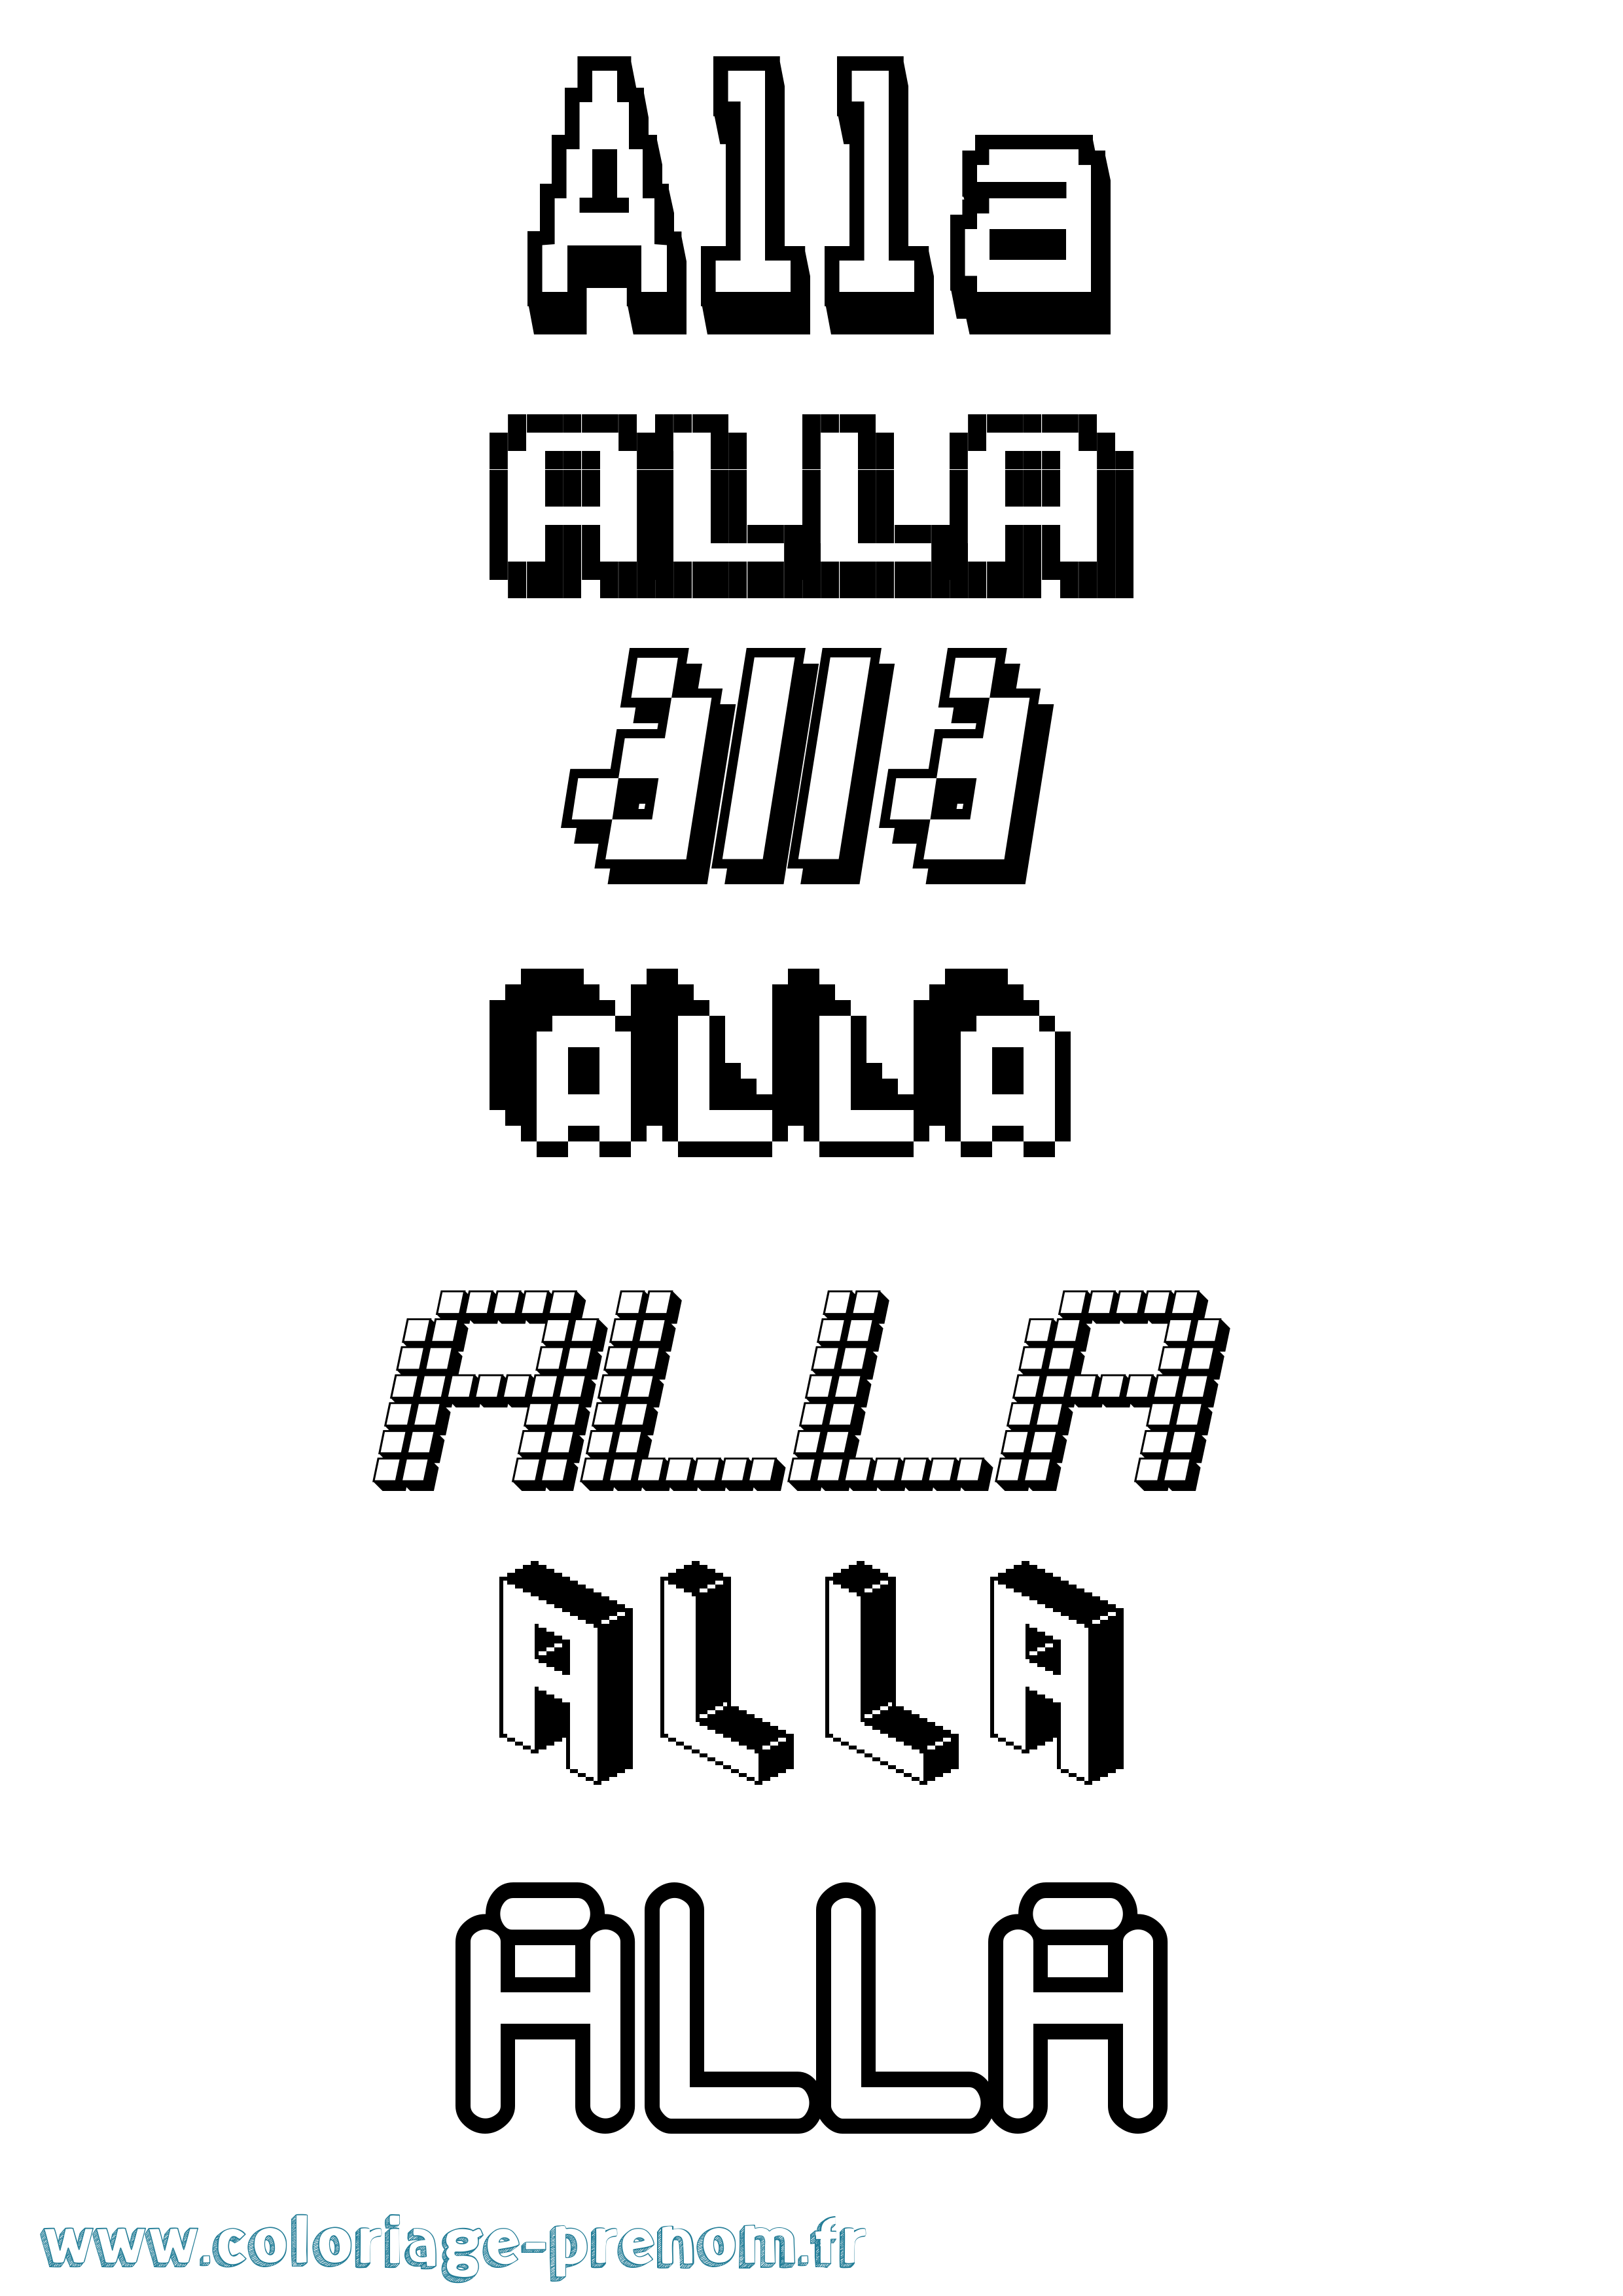 Coloriage prénom Alla Pixel